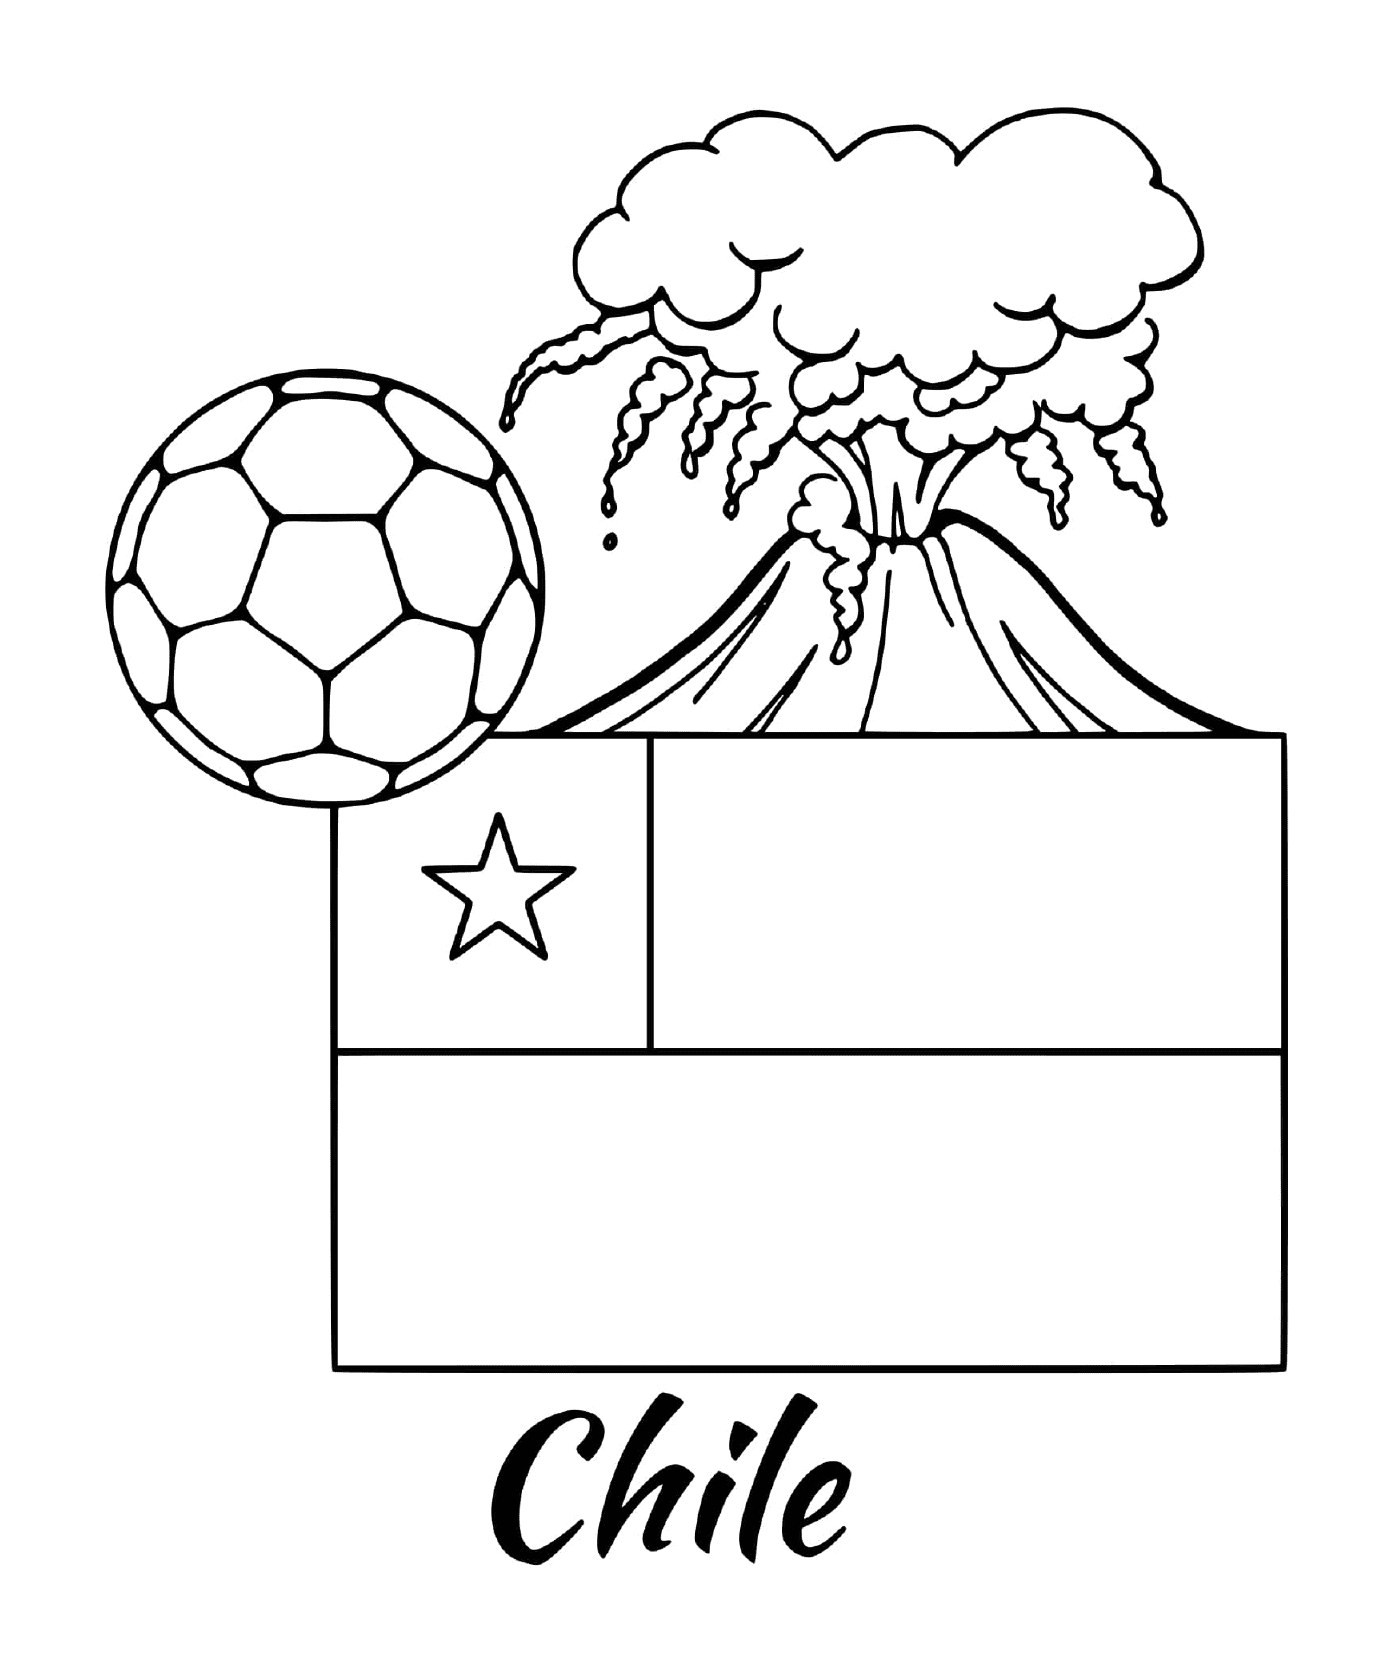  Bandera de Chile, volcán 